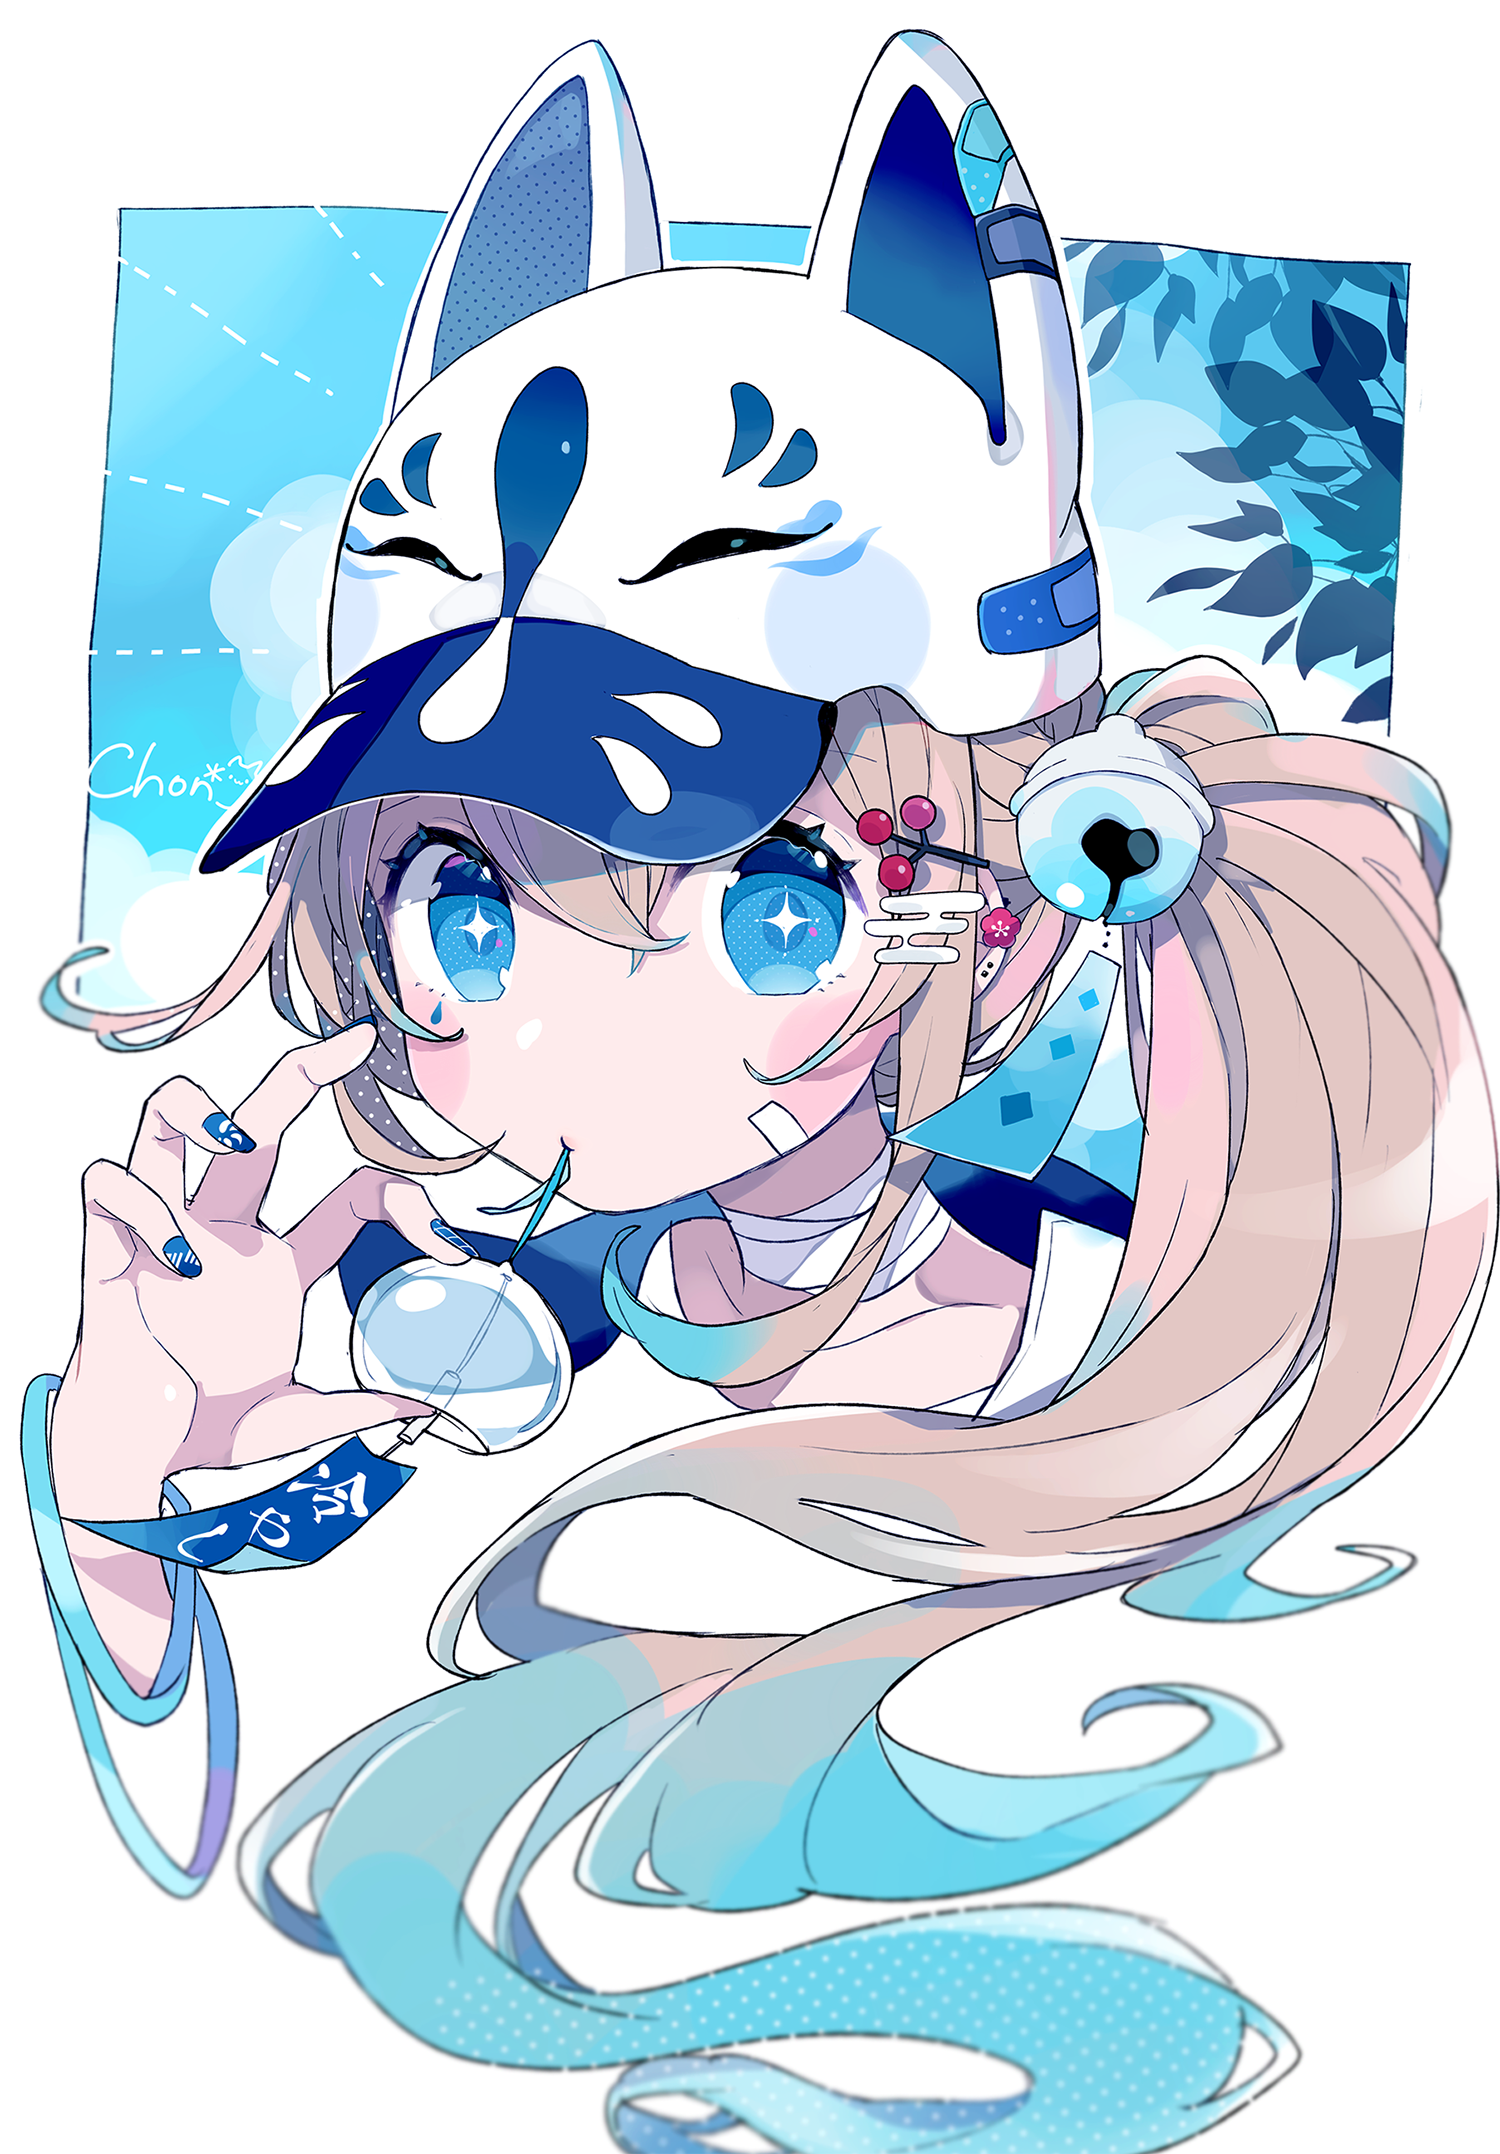 Anime 1500x2154 anime anime girls digital art artwork 2D portrait display Chon brunette blue eyes baseball cap